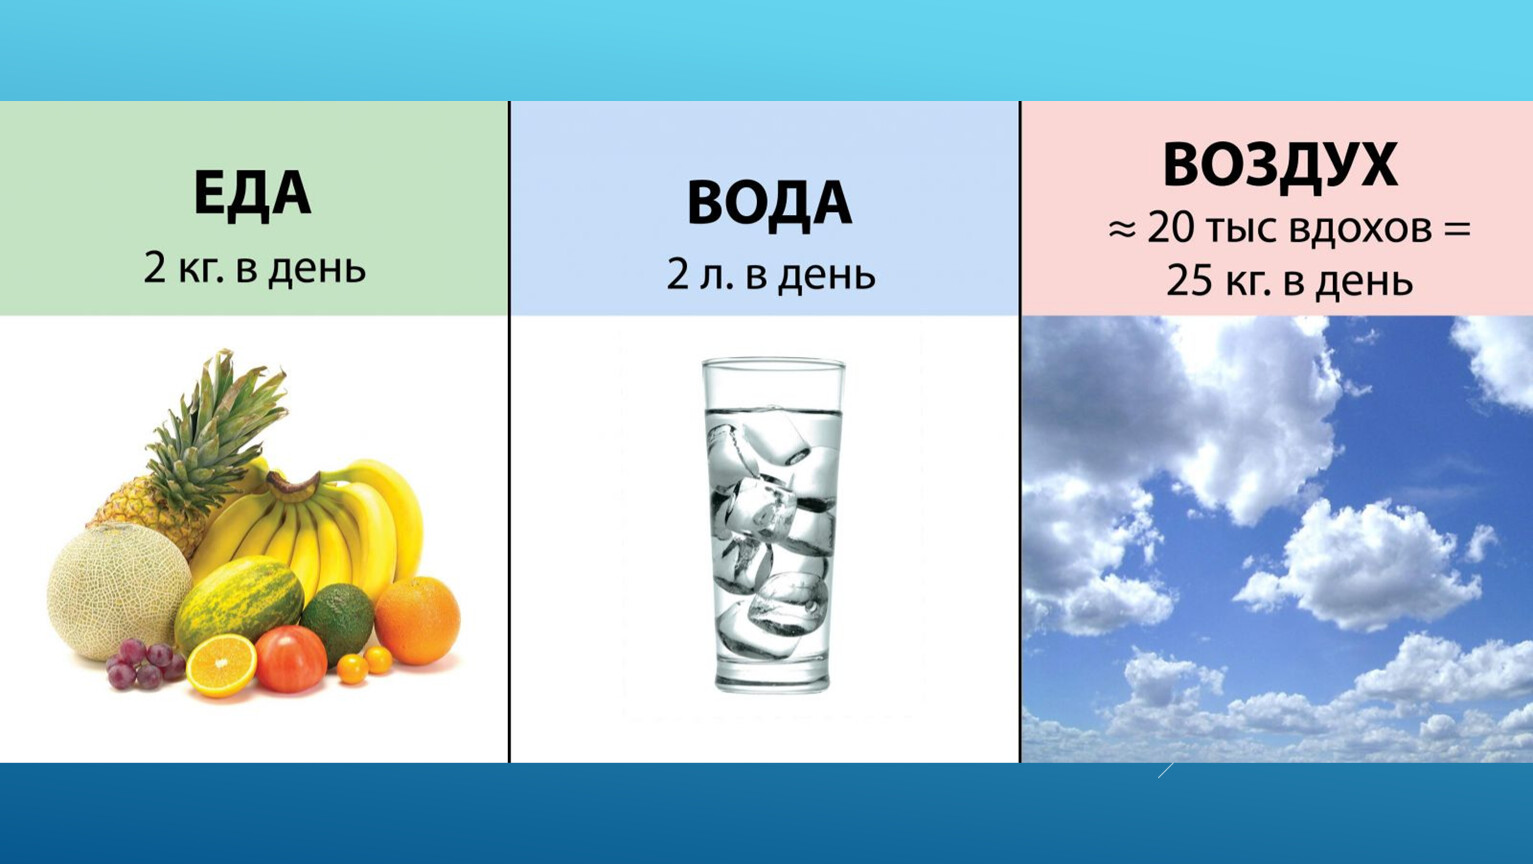 Биологические пища вода воздух. Еда вода воздух. Вода в питании. Человек воздух в воде. Вода в питании человека.